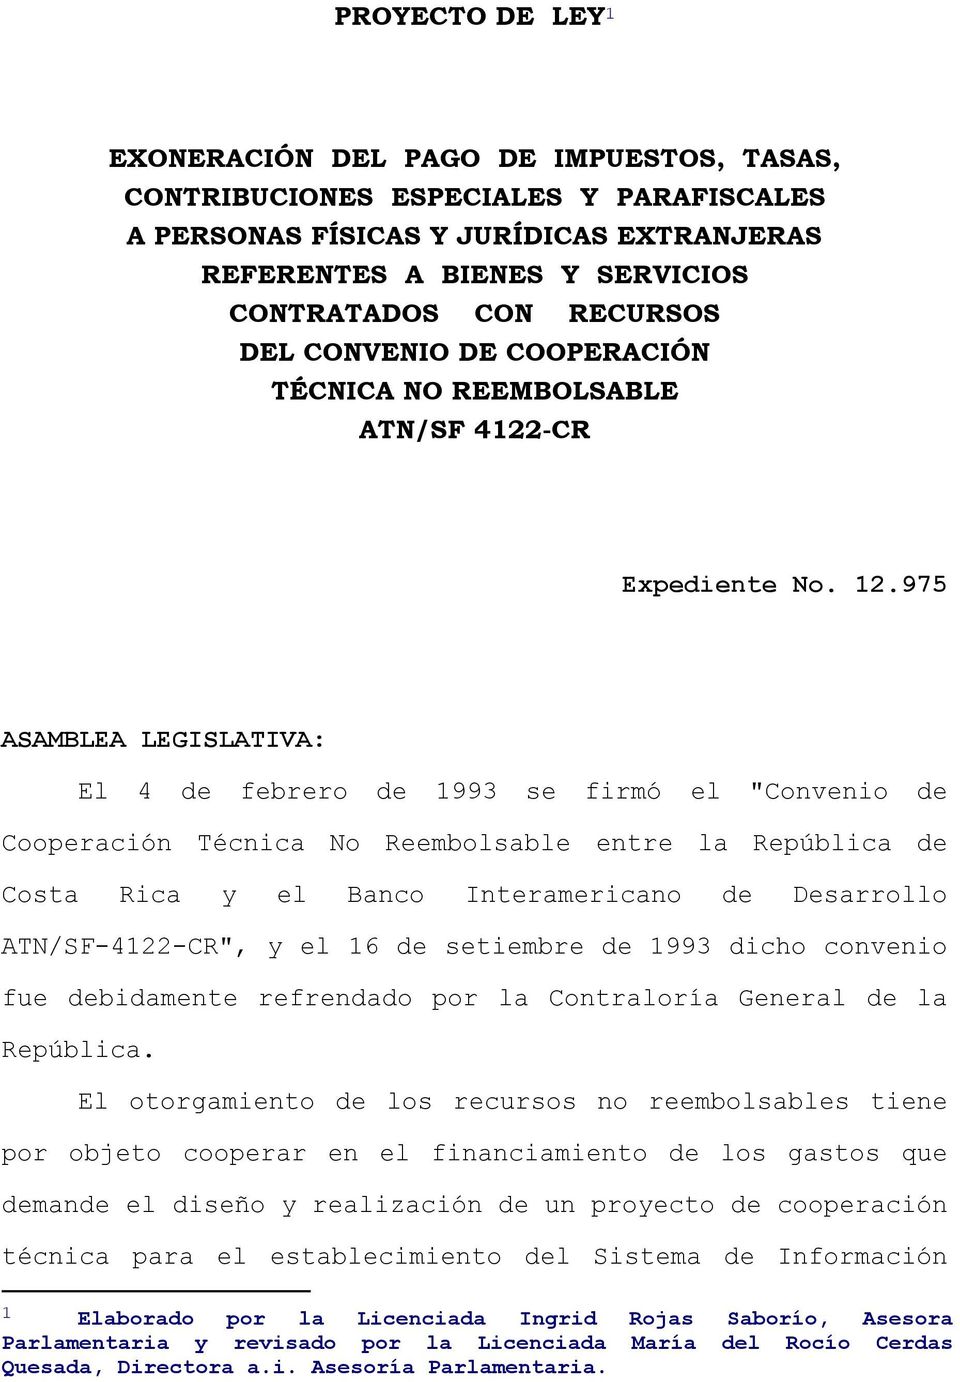 975 ASAMBLEA LEGISLATIVA: El 4 de febrero de 1993 se firmó el "Convenio de Cooperación Técnica No Reembolsable entre la República de Costa Rica y el Banco Interamericano de Desarrollo